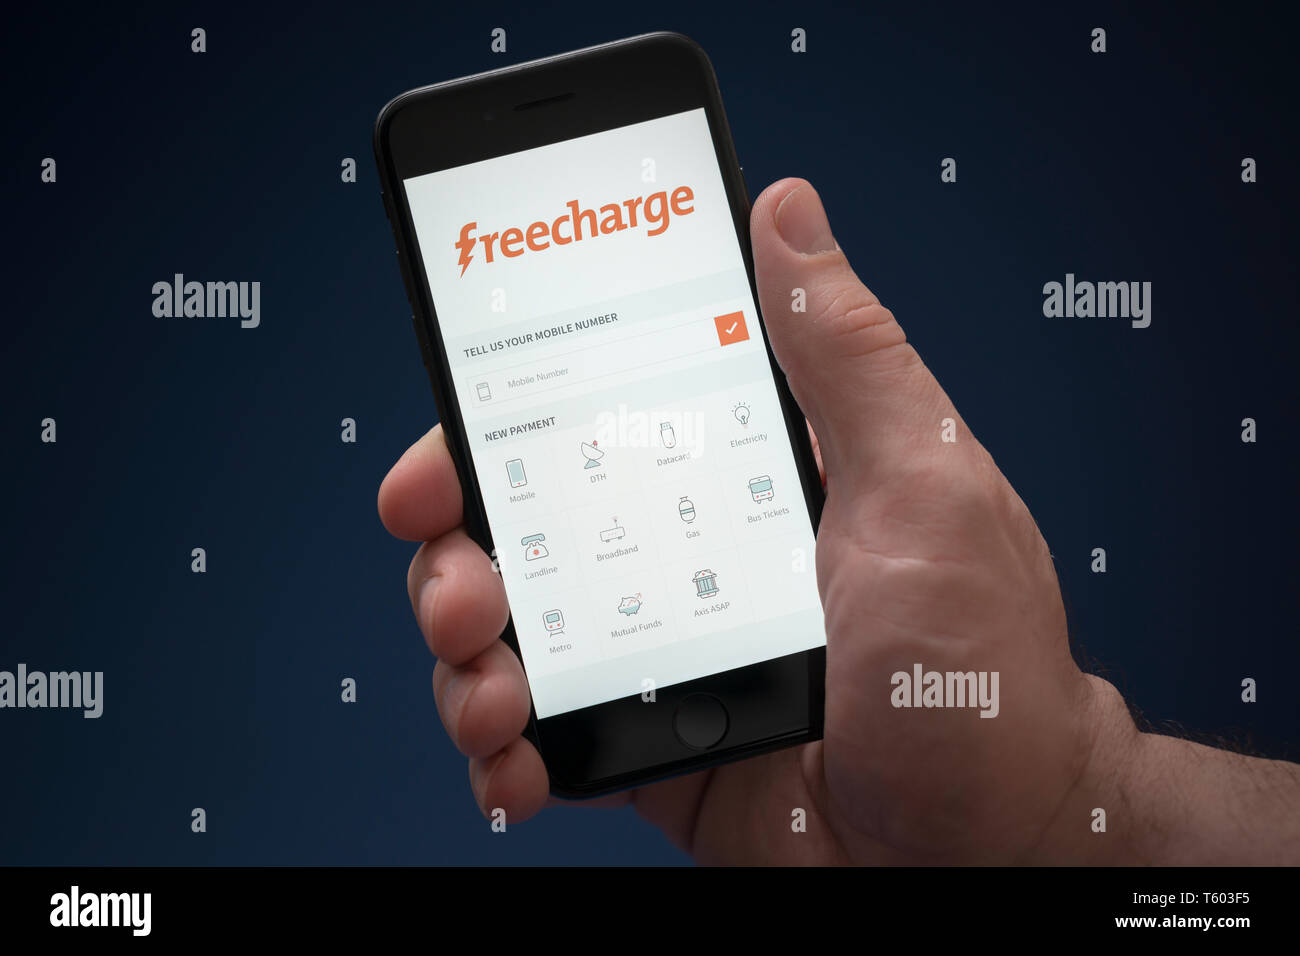 Ein Mann schaut auf seinem iPhone die zeigt den Freecharge Logo (nur redaktionelle Nutzung). Stockfoto